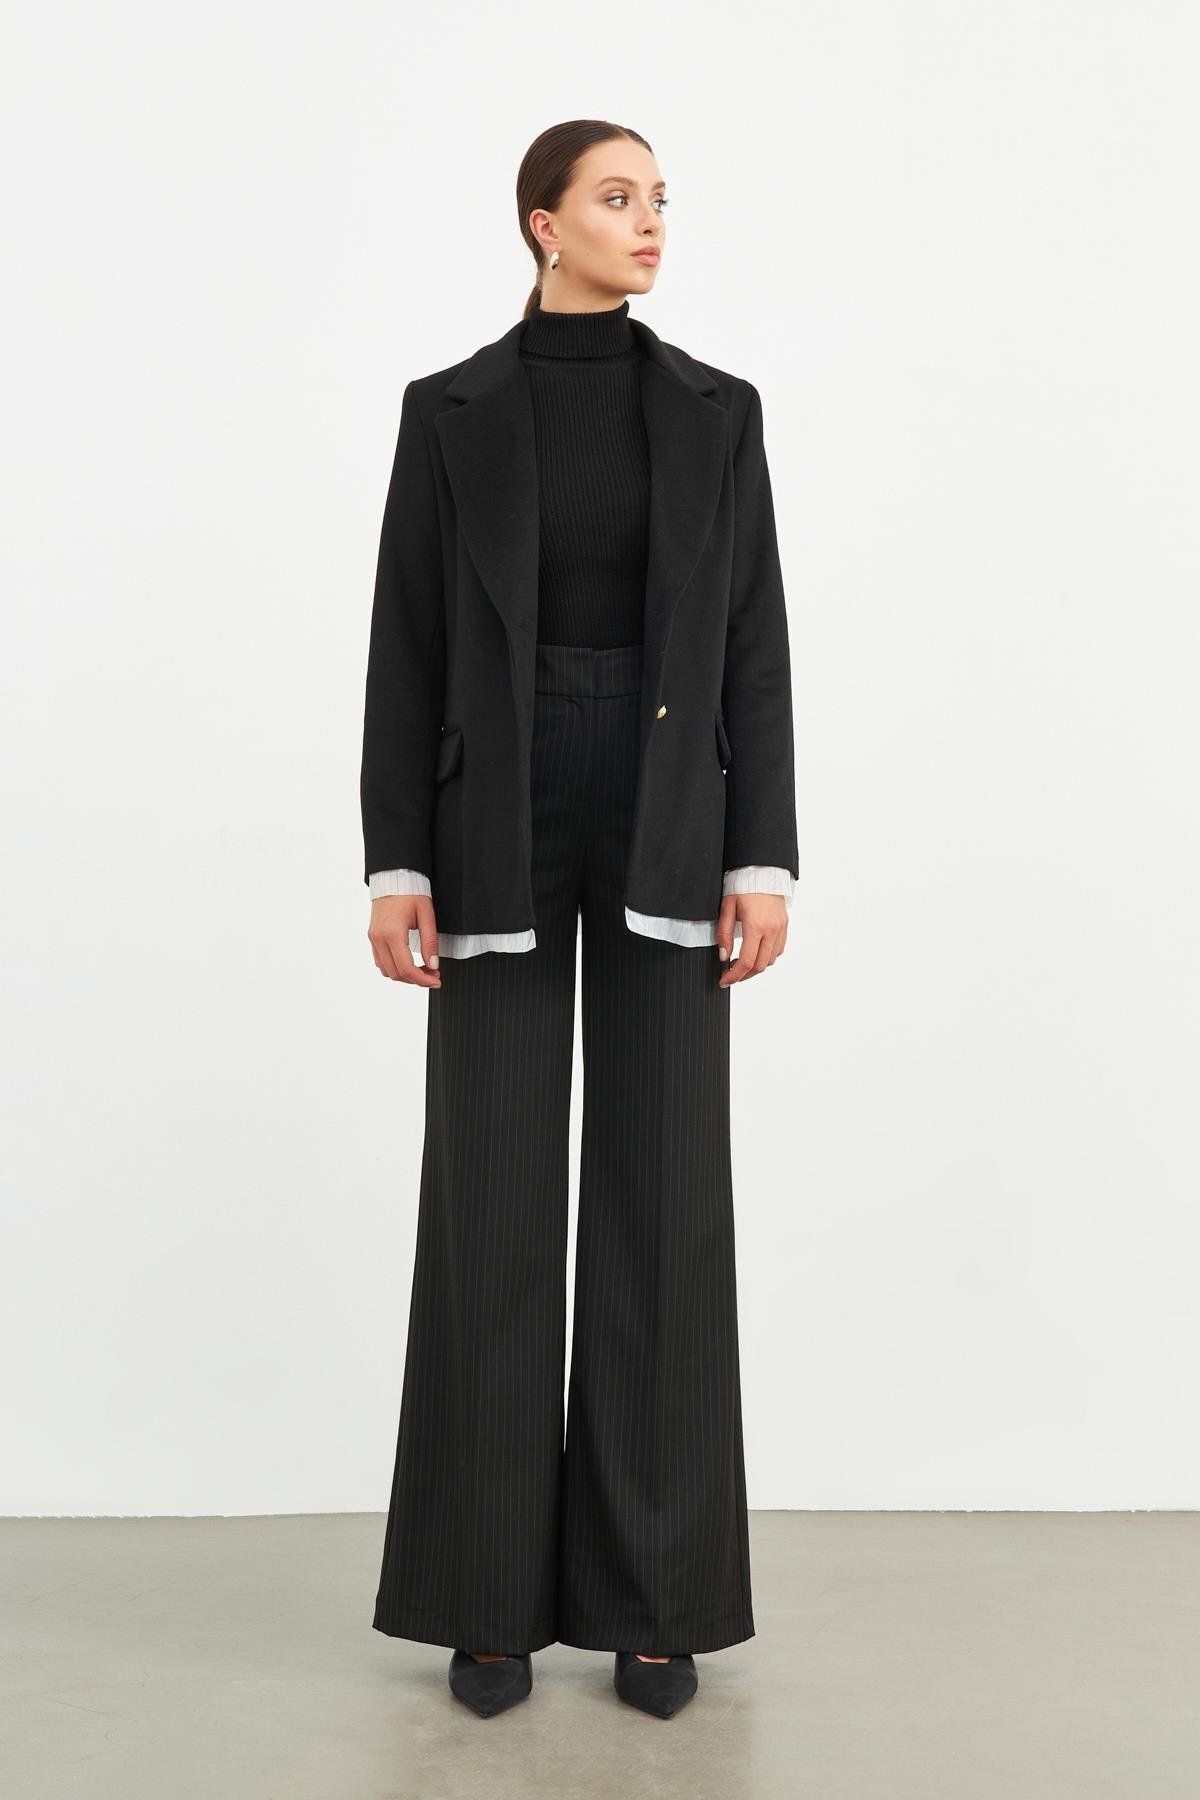 Setre Siyah Düğme, Kollarda Ve Etek Kısmından Kumaş Detaylı Uzun Ceket